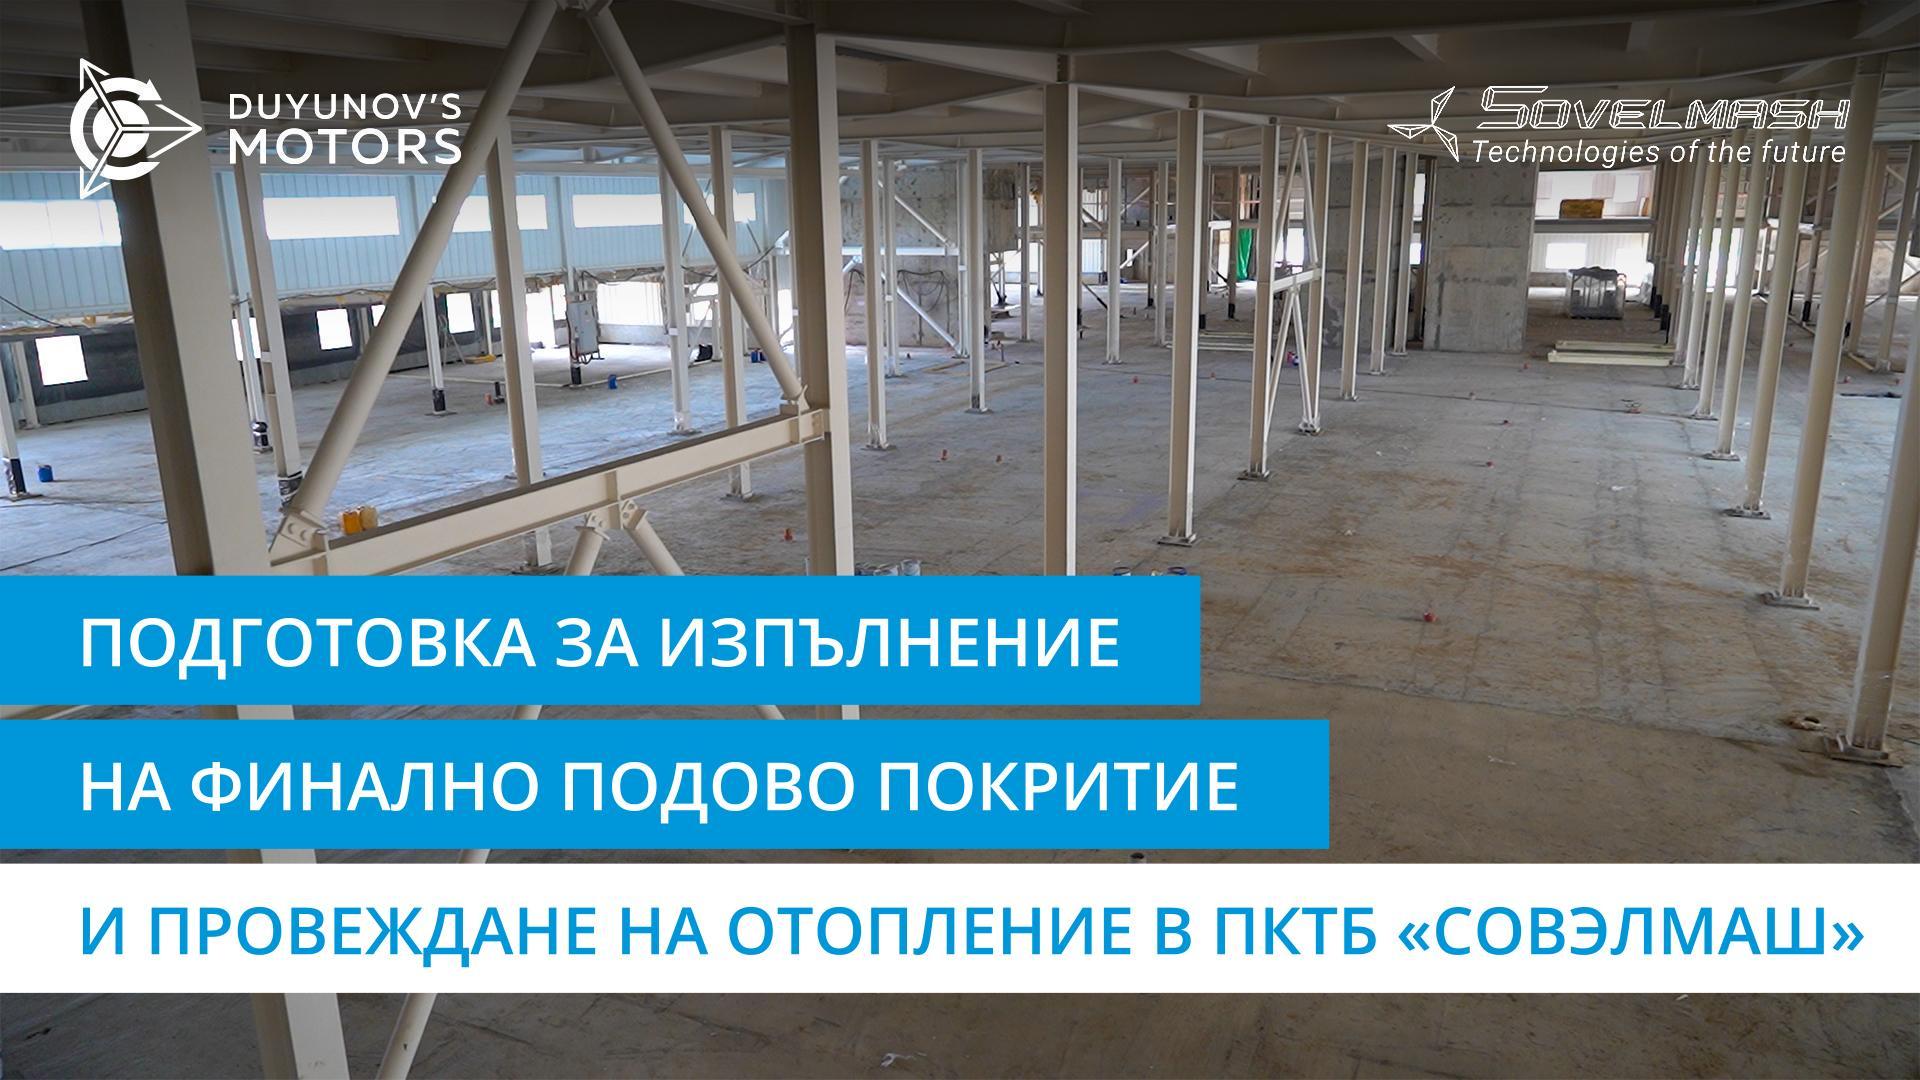 Подготовка за изпълнение на финално подово покритие и провеждане на отопление в ПКТБ «Совэлмаш»